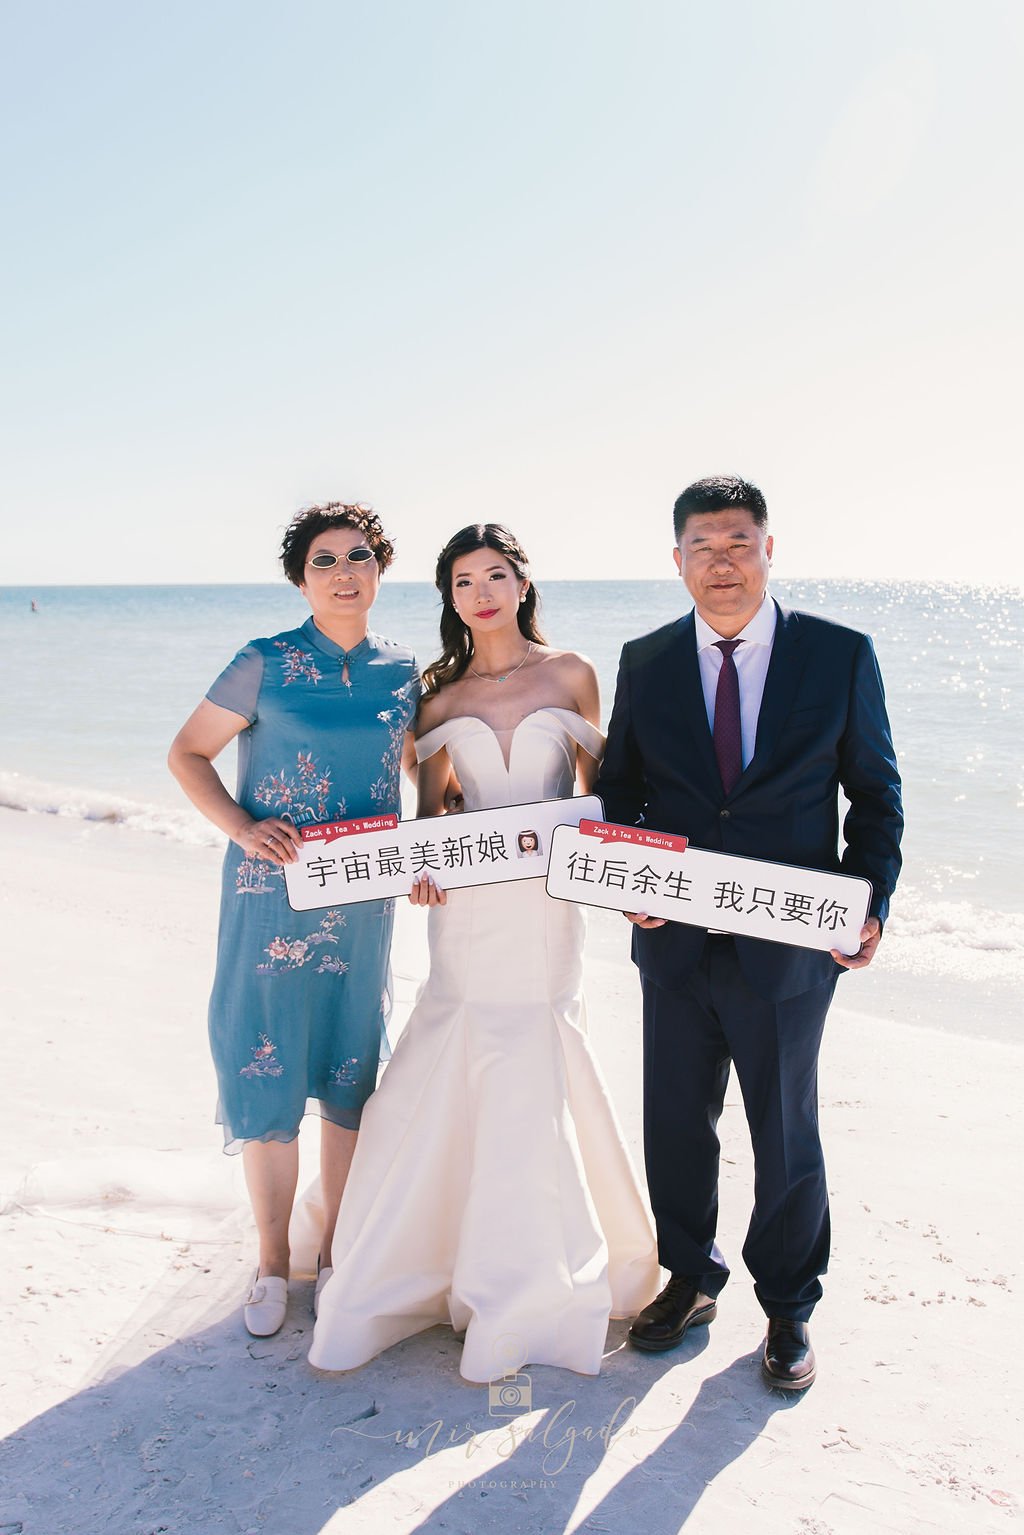 Destination-wedding, Pass-a-grill-beach-wedding, beach-wedding, asian-beach-ceremony, wedding-photographer